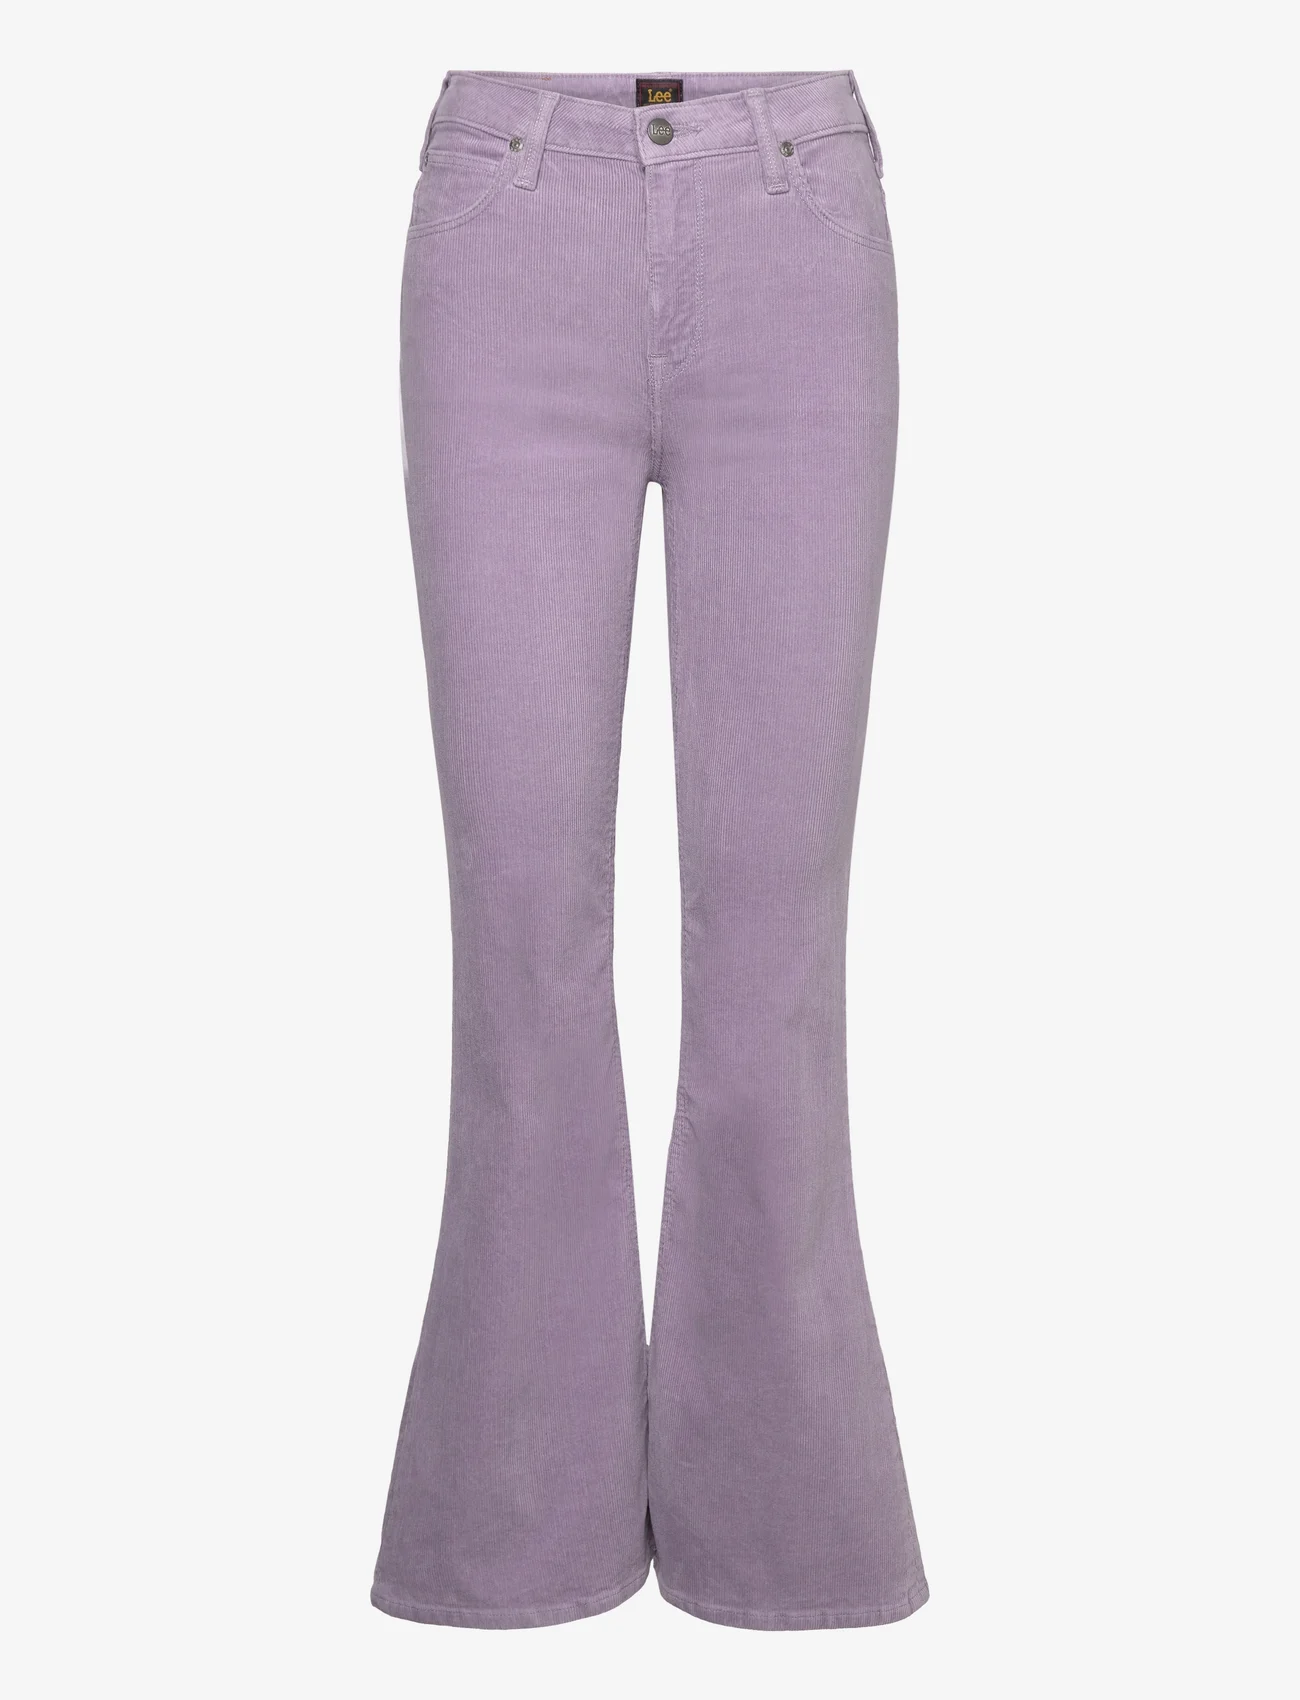 Lee Jeans - BREESE - utsvängda jeans - jazzy purple - 0